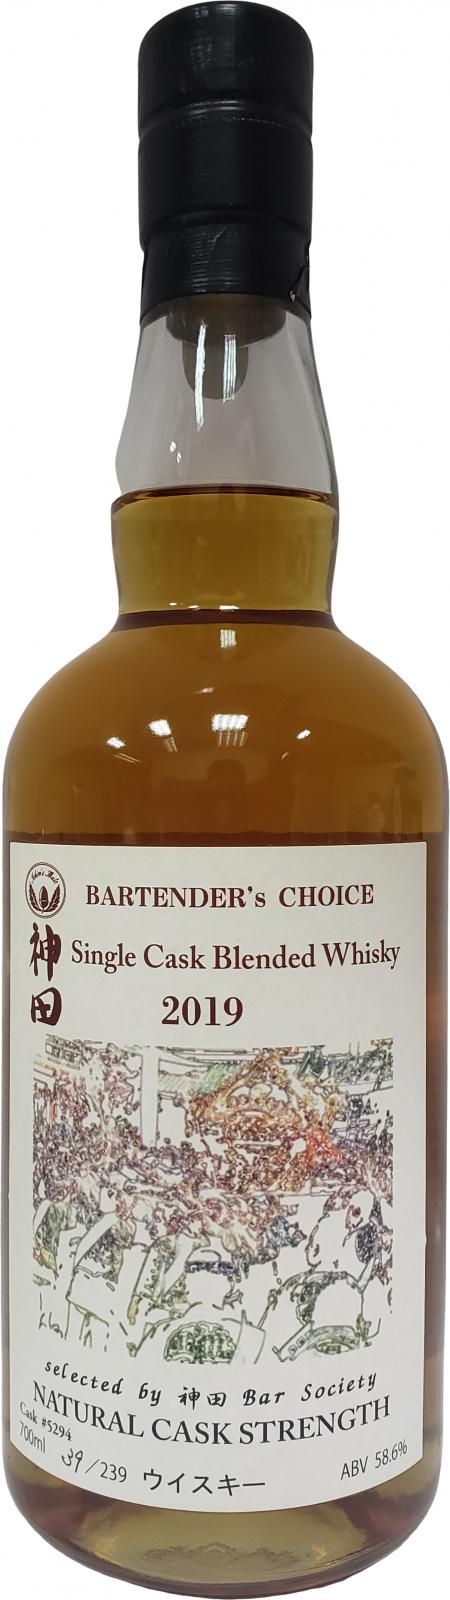 Chichibu Bartender's Choice 2019 Single Cask Blended Whisky #5294 58.6% 700ml